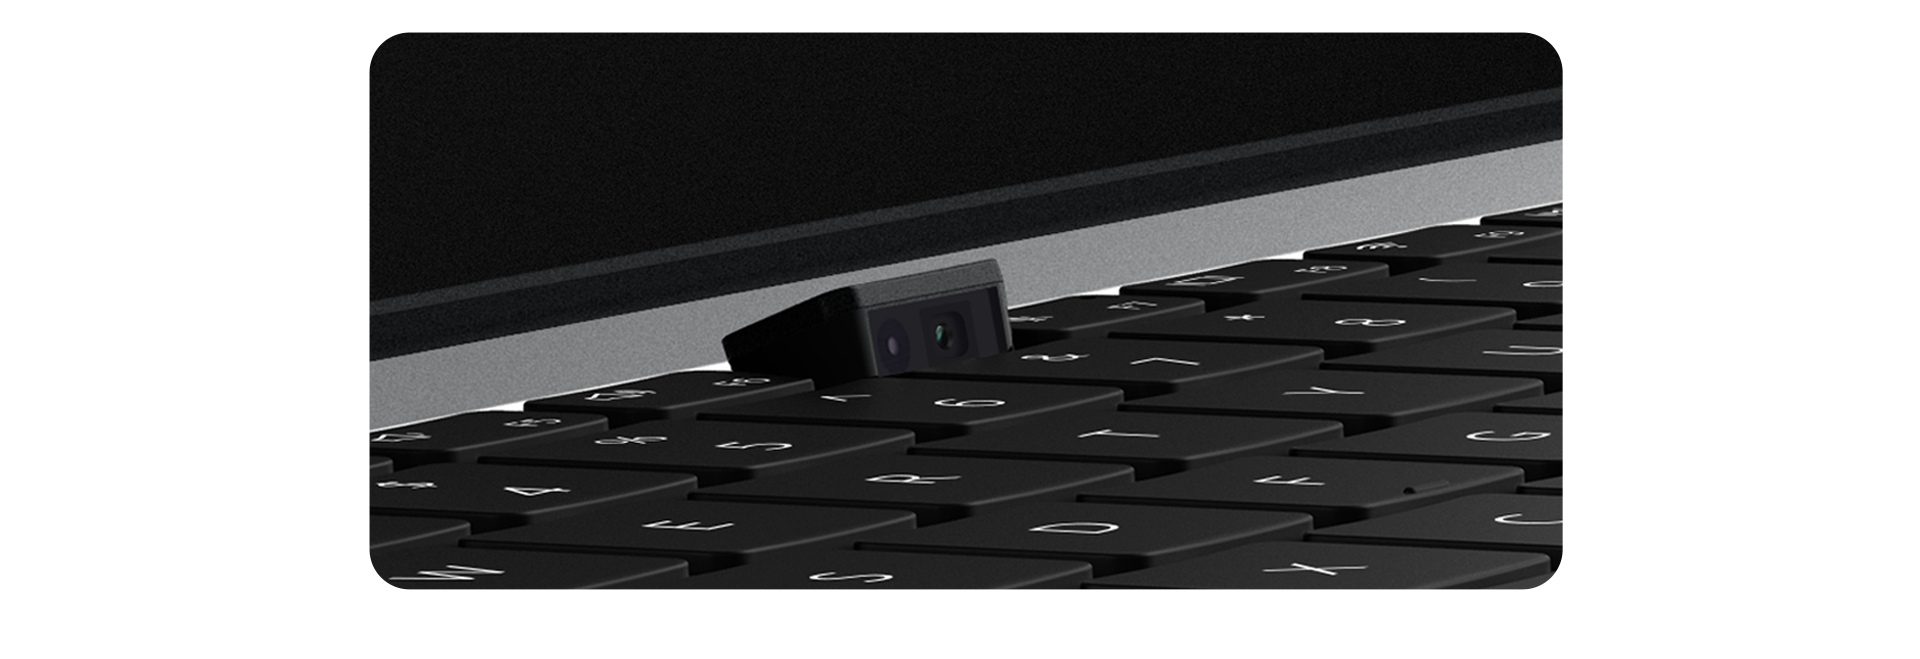 HUAWEI MateBook D15 2021 Secure Pop-up Webcam